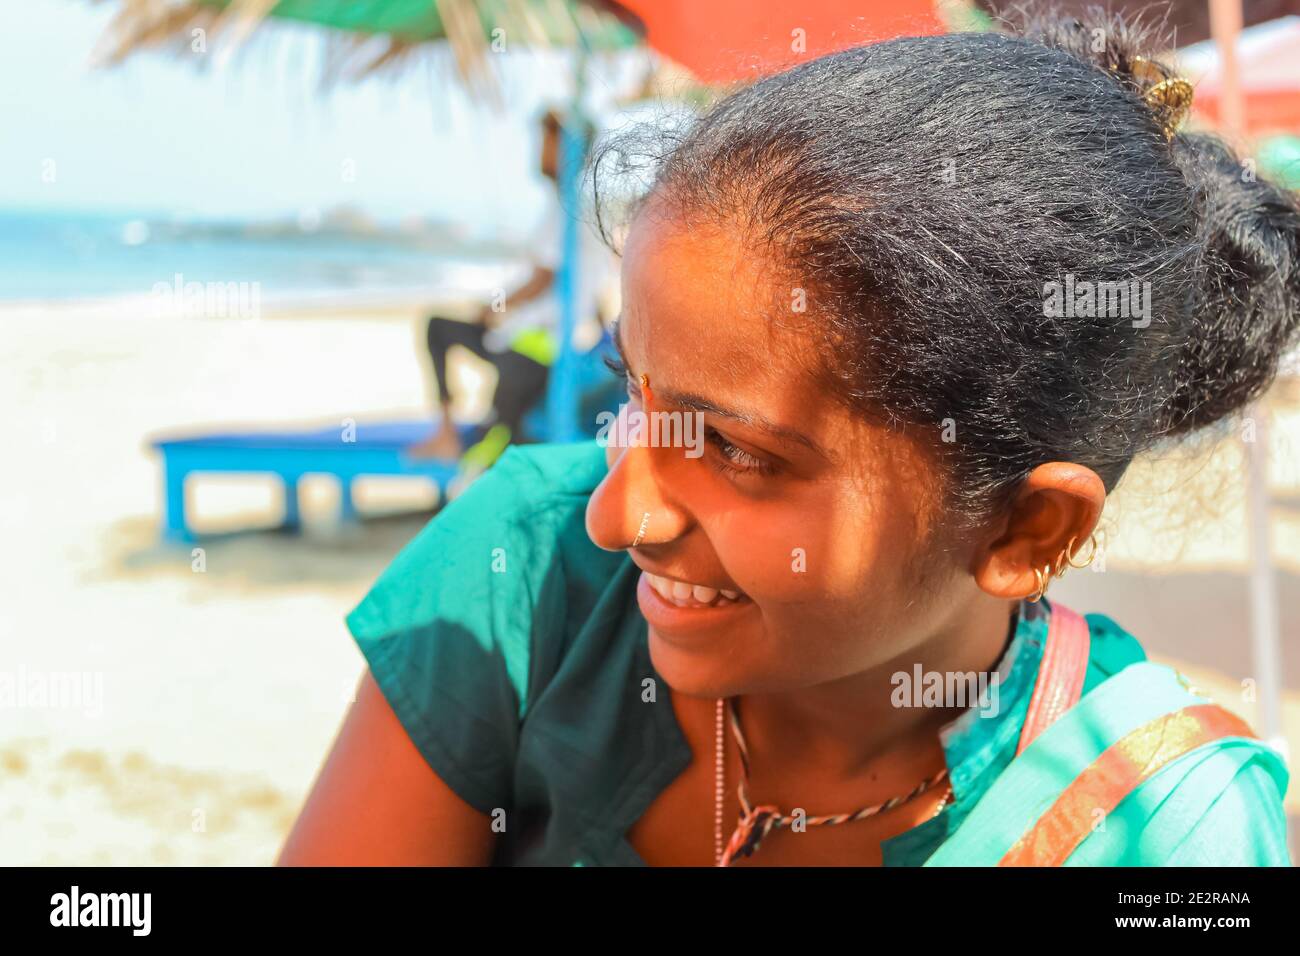 Ein junges indisches Mädchen in einem Sari-Kleid lächelt mit einem schüchtern. Siolim, Goa/Indien - Oktober 28,2018. Selektiver Fokus, Reisefoto, Straßenfoto, Konzeptfoto i Stockfoto